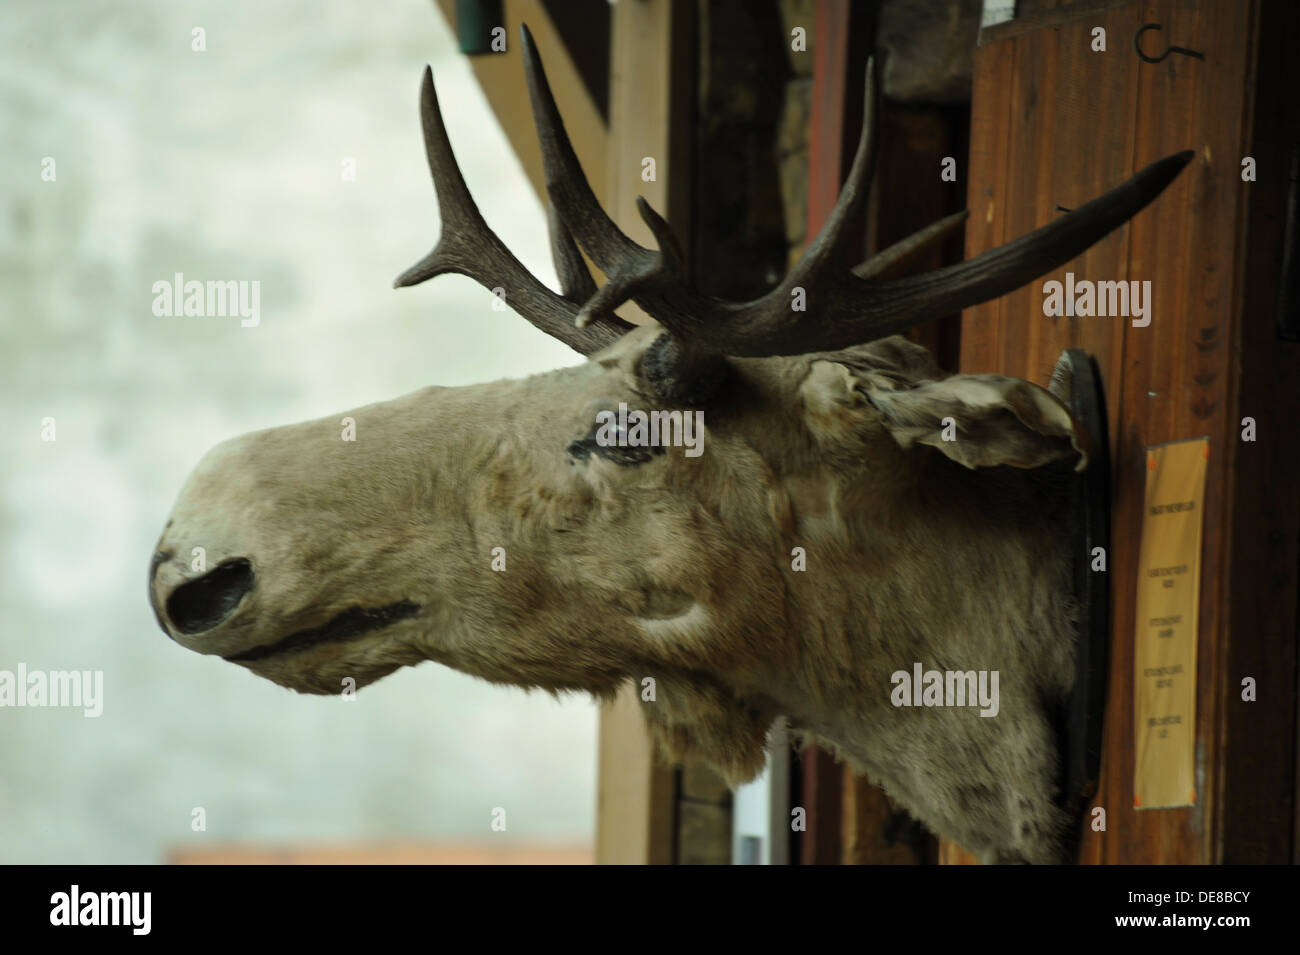 Hunting trophy of Elk, Bergen, Norway. Stock Photo